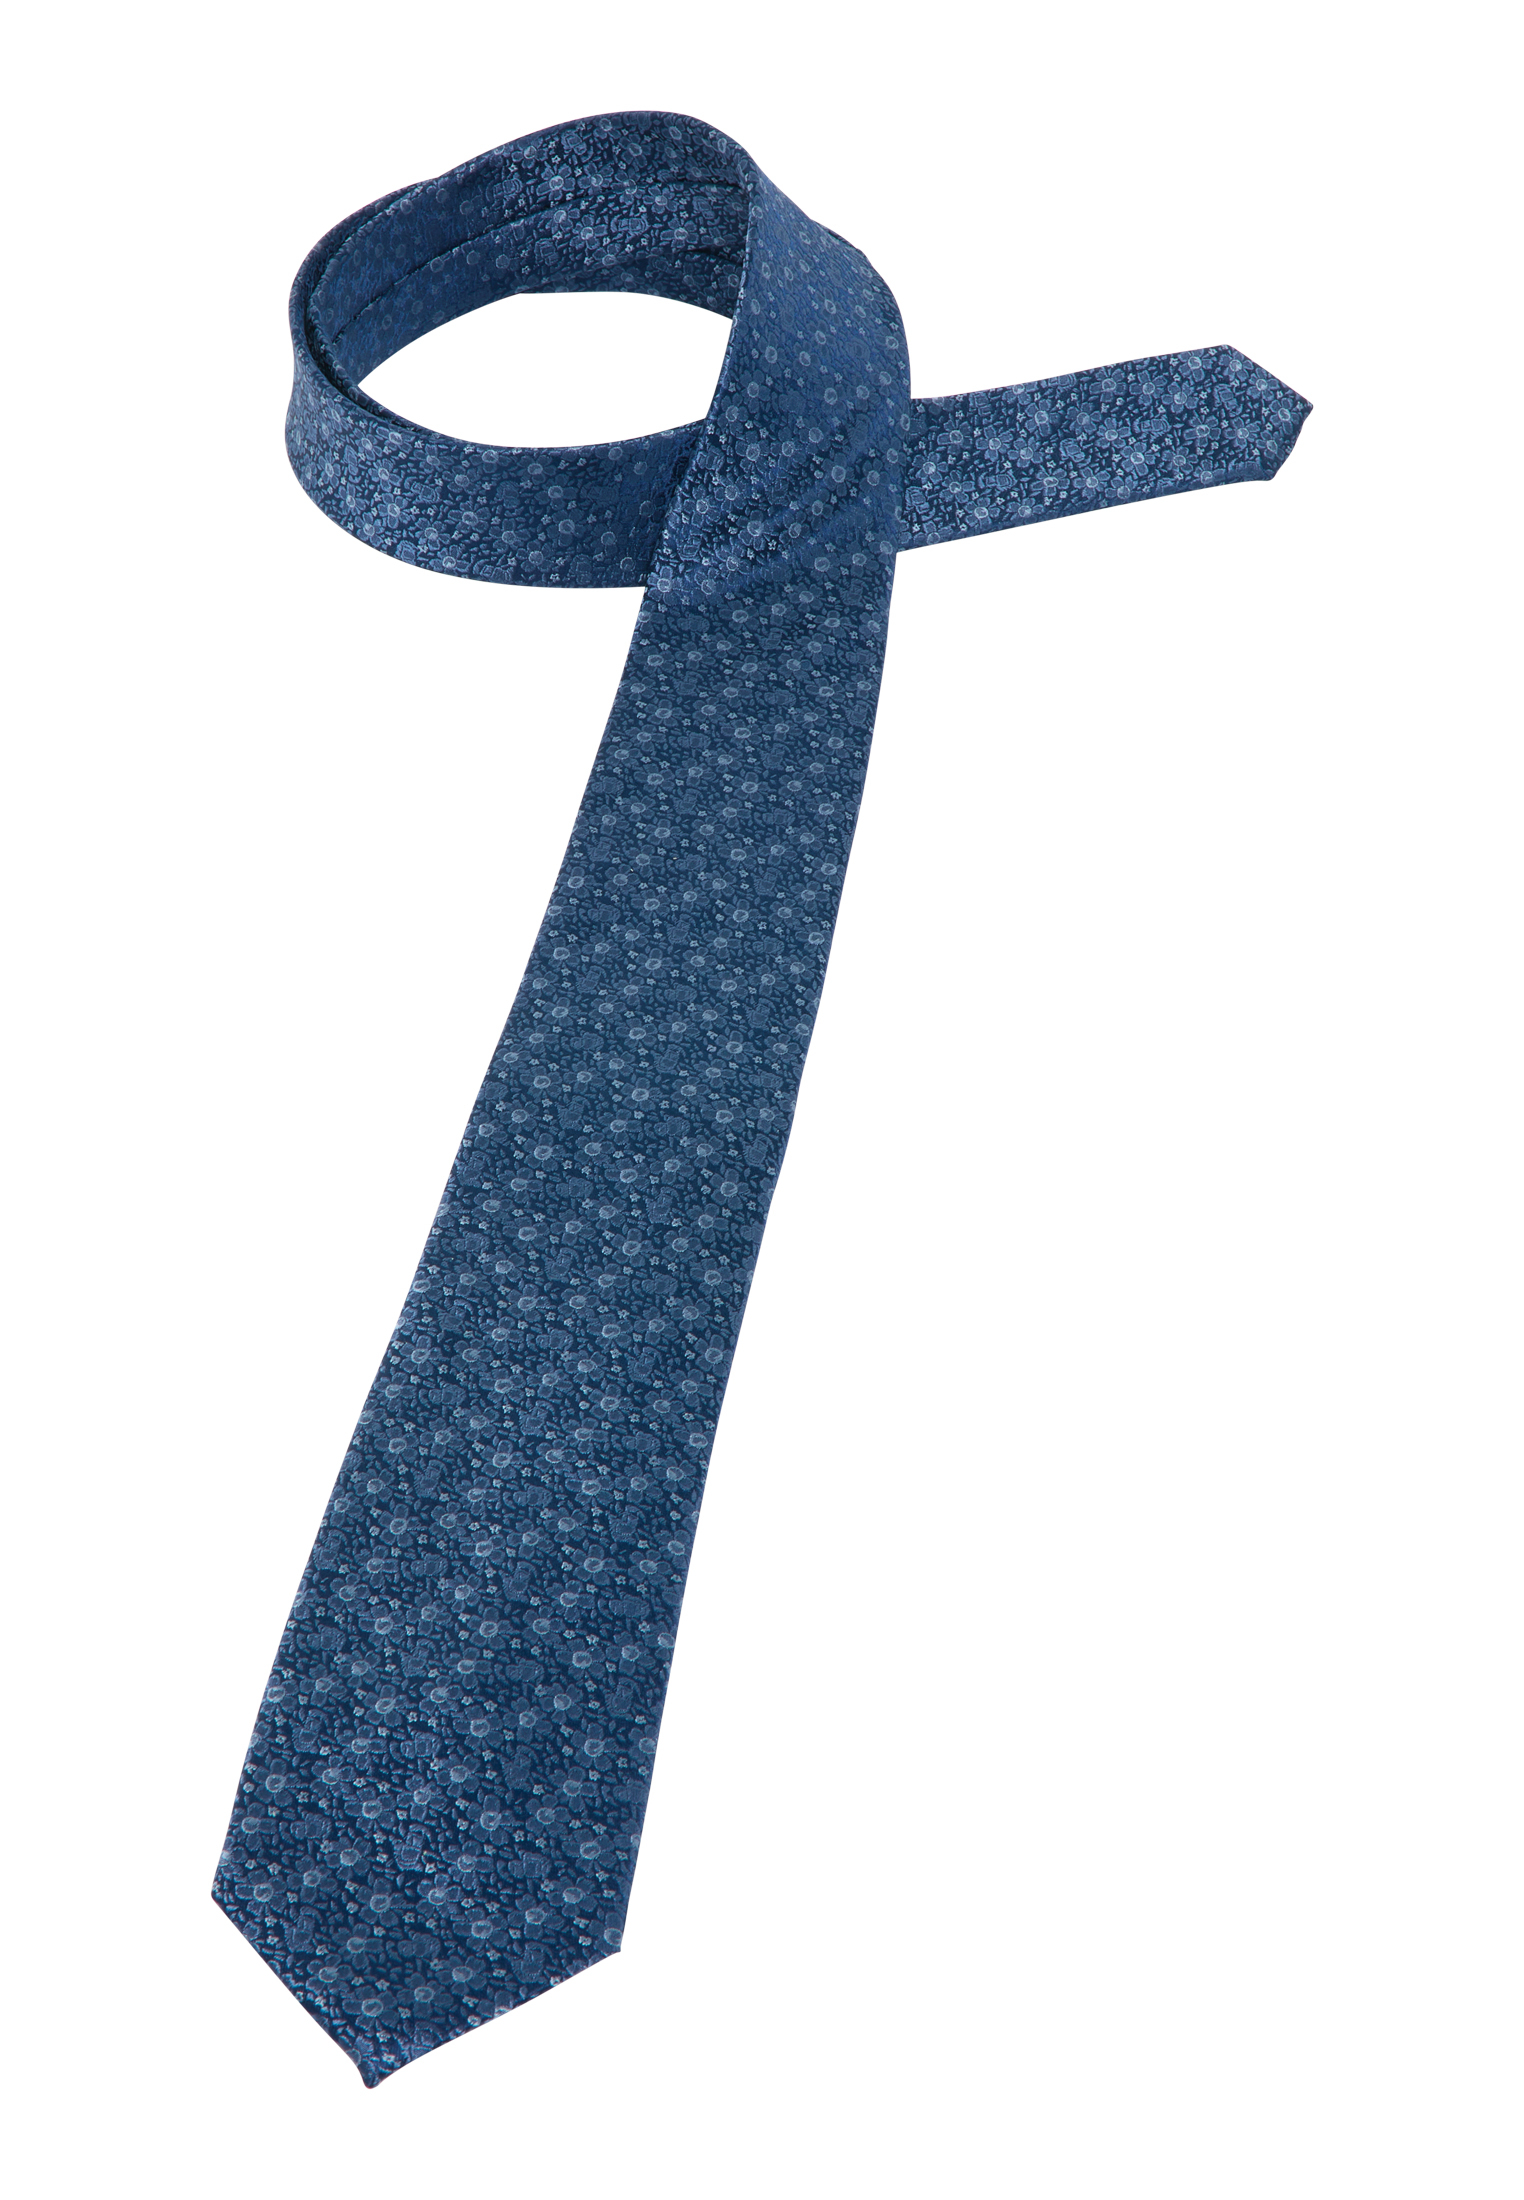 Krawatte in blau gemustert | blau | 142 | 1AC01877-01-41-142